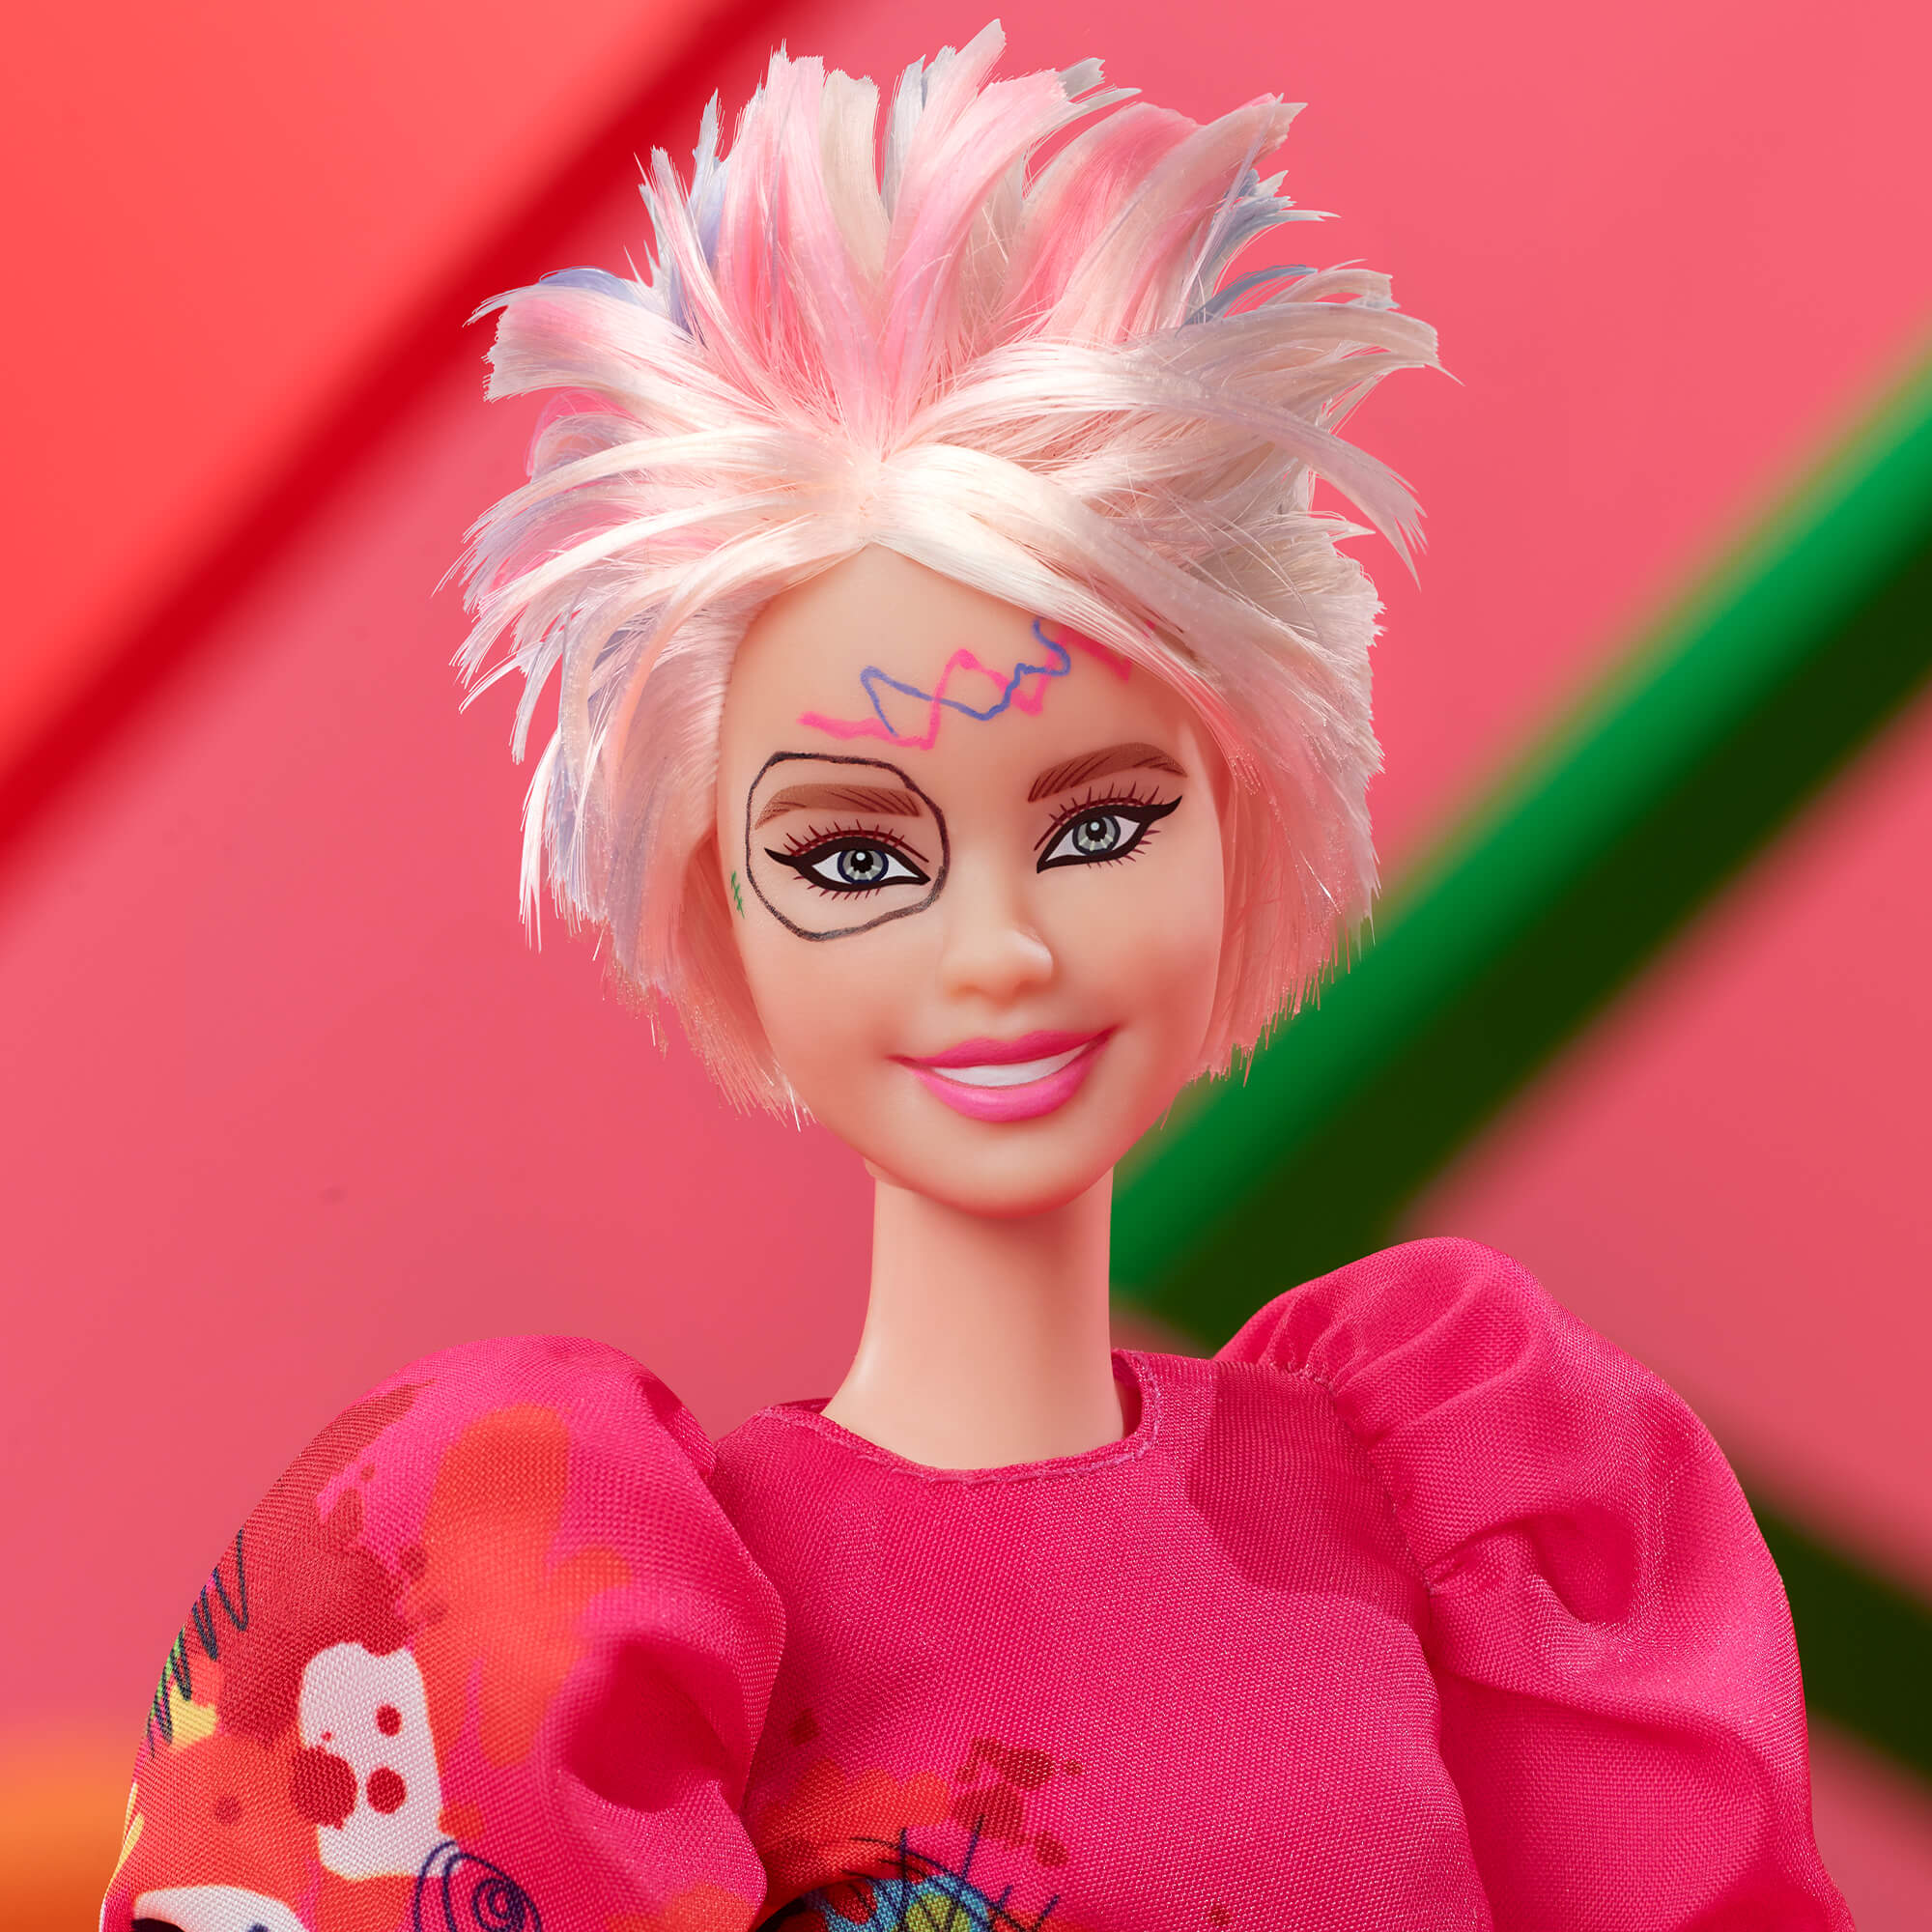 Novas Bonecas da Mattel inspiradas nos Contos de Fadas